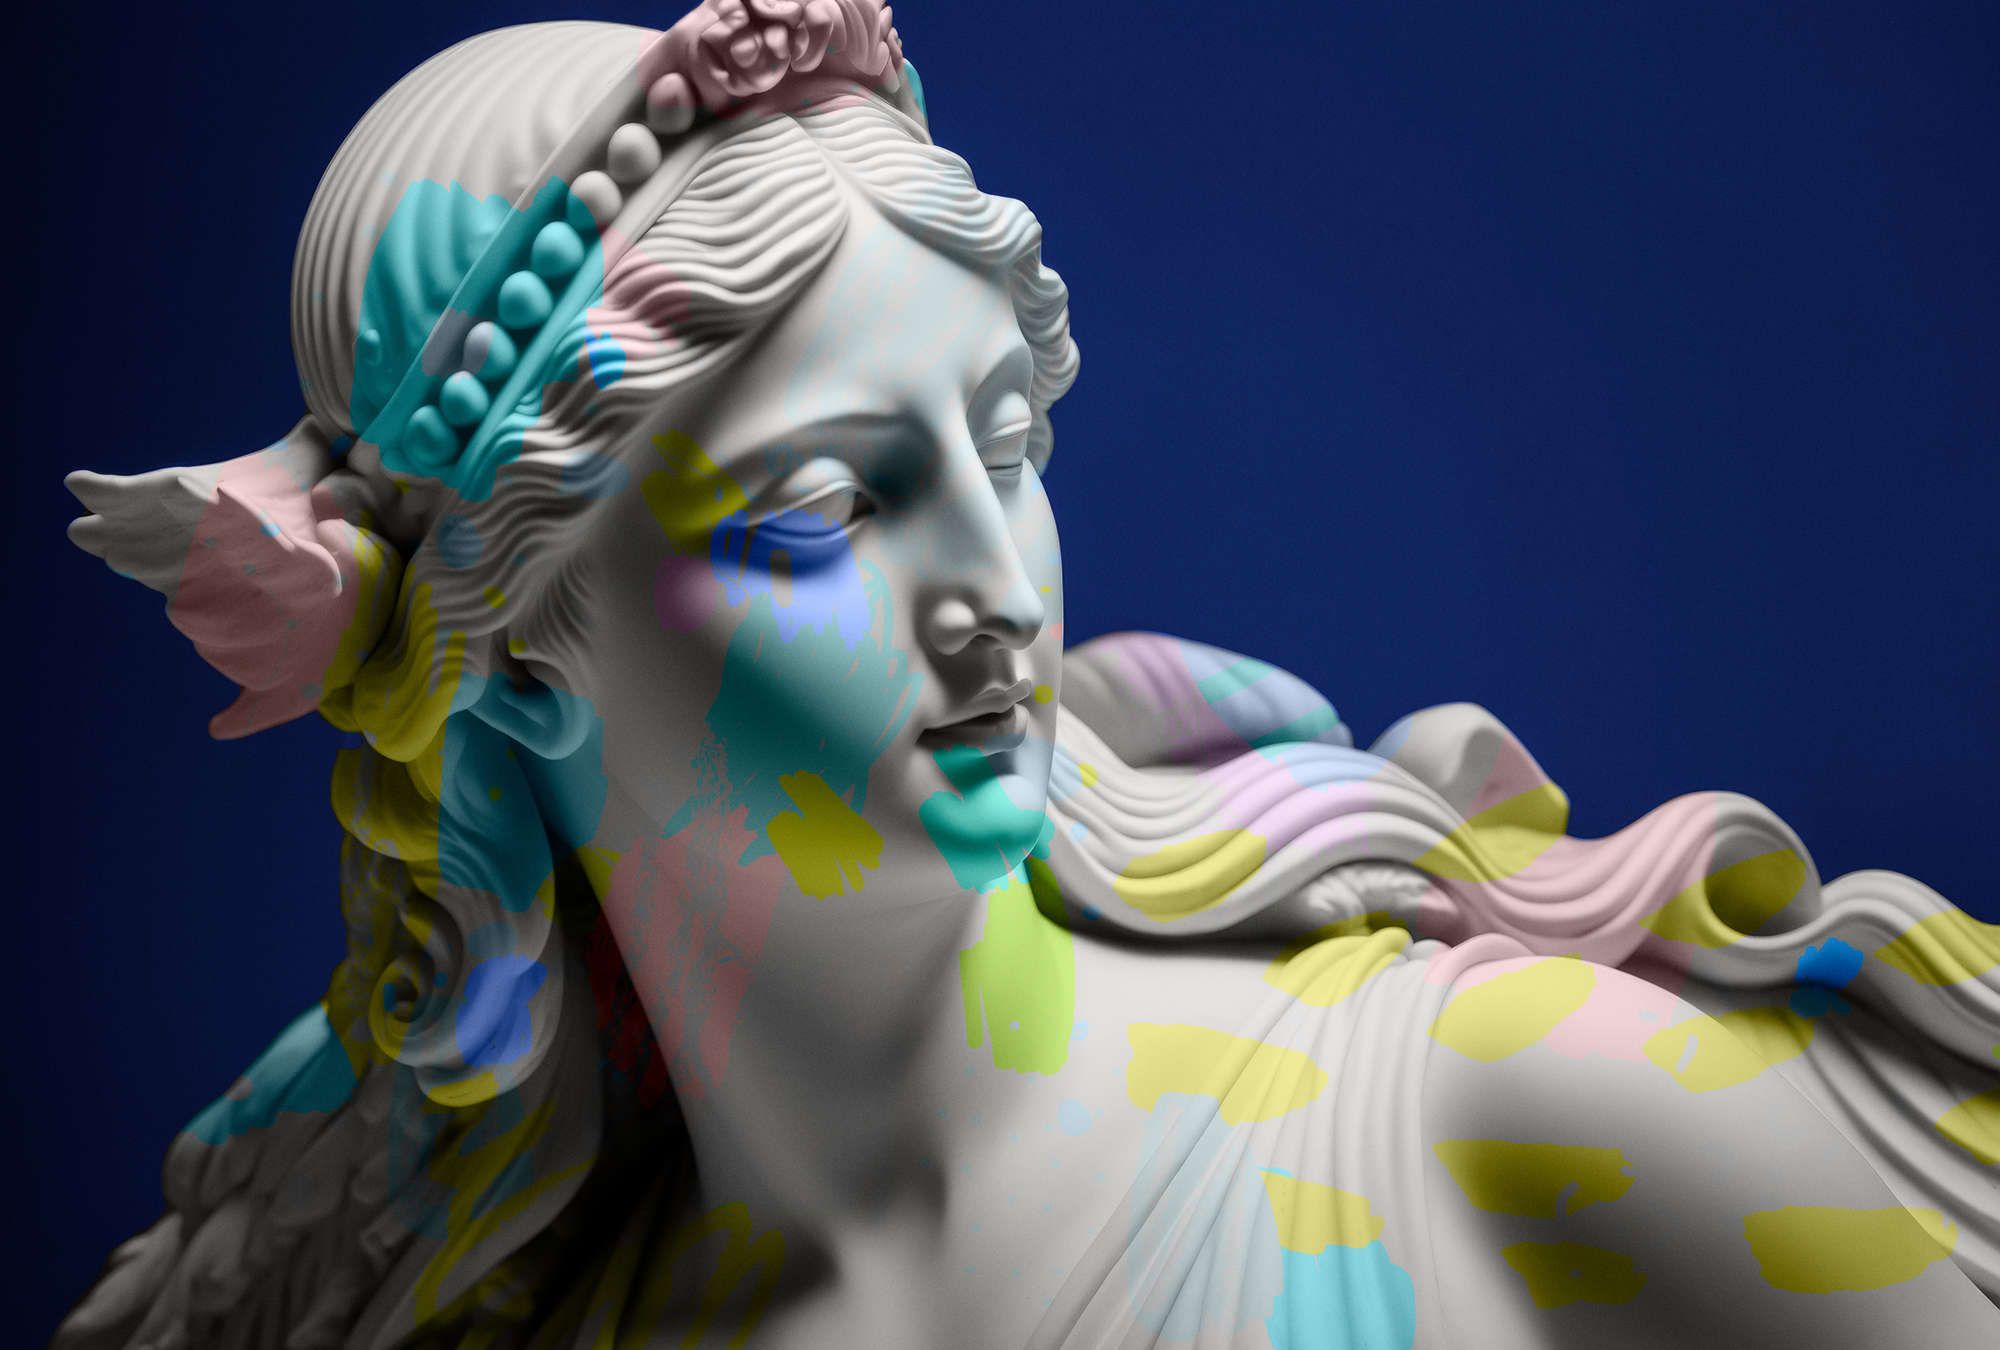             Fotomurali »anthea« - scultura femminile con accenti colorati - tessuto non tessuto opaco e liscio
        